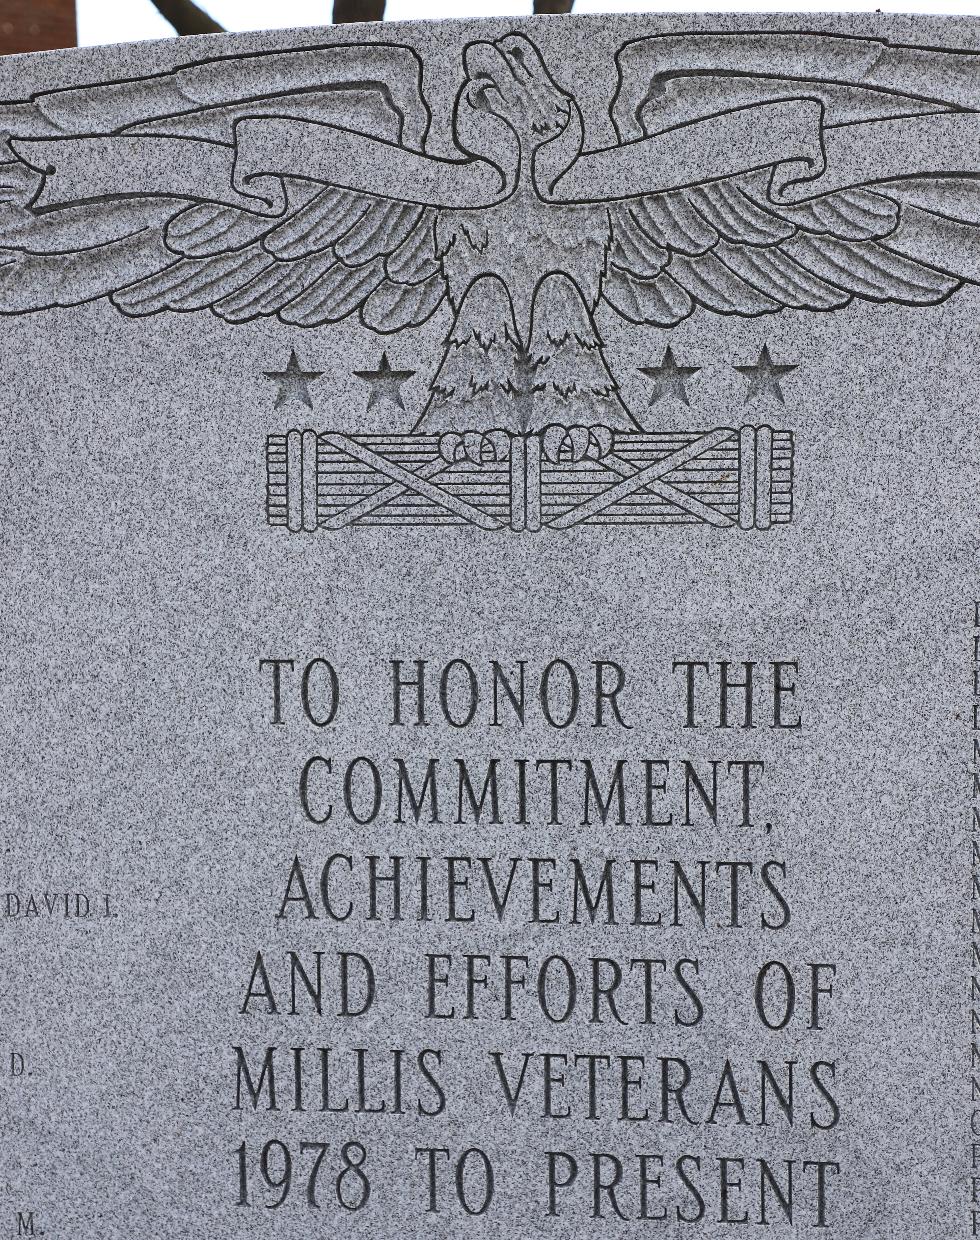 Millis Massachusetts Post 1978 Veterans Memorial